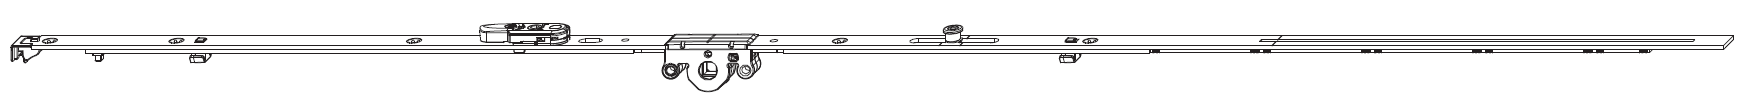 MAICO -  Cremonese MULTI-MATIC anta ribalta antieffrazione altezza maniglia fissa con piedino e dss per ribalta - gr / dim. 2200 - entrata 15 - alt. man. 1050 - lbb/hbb 1951 - 2200